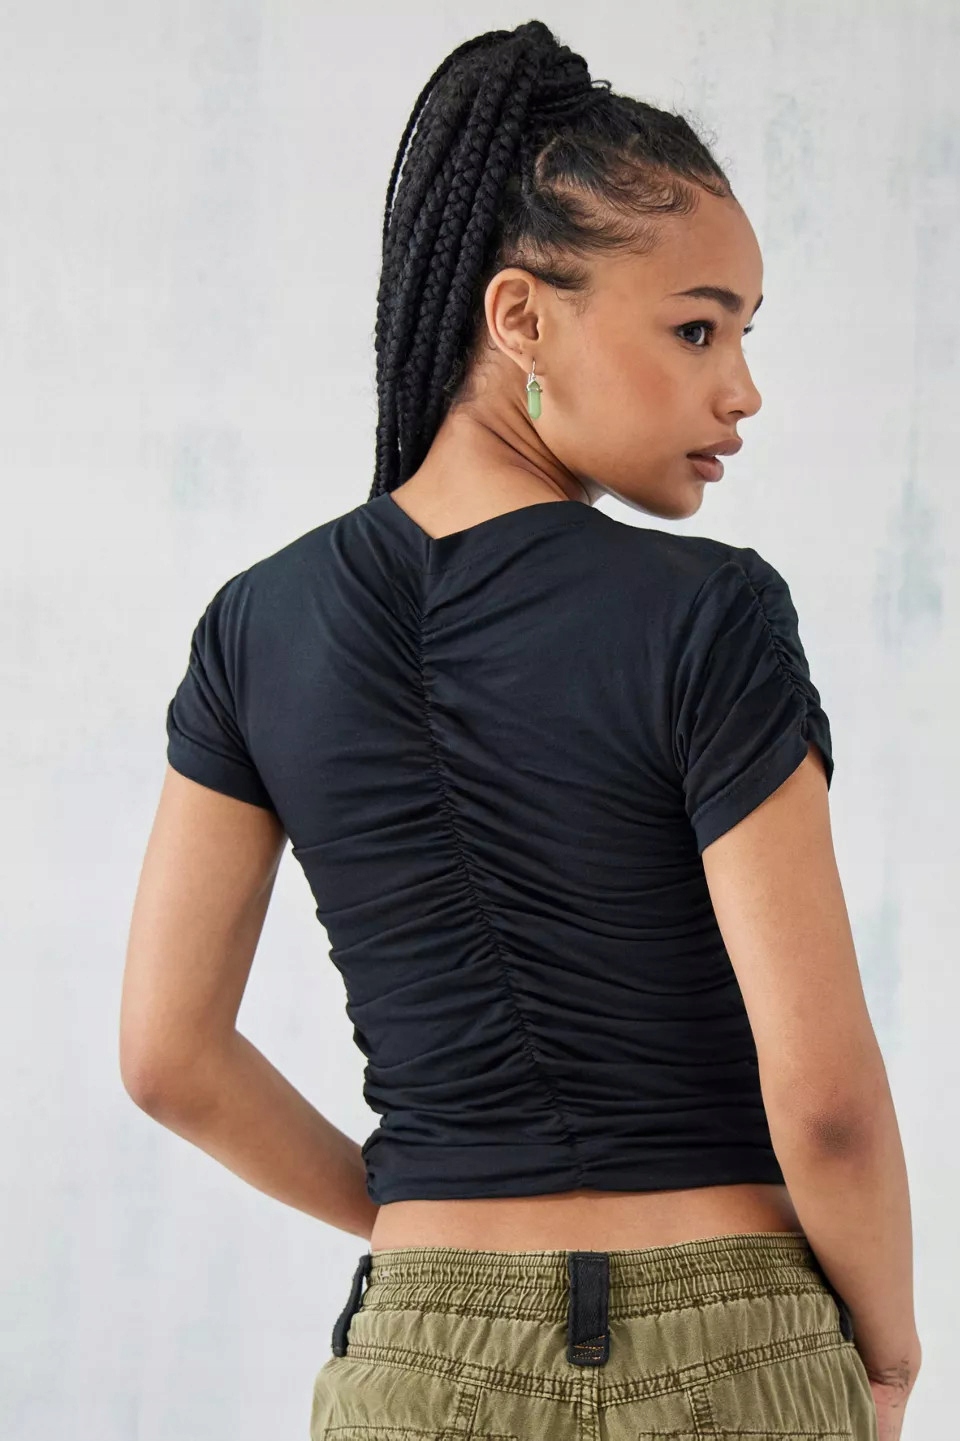 Urban Outfitters NH5 iri čierny top zvlnenie krátky rukáv XS